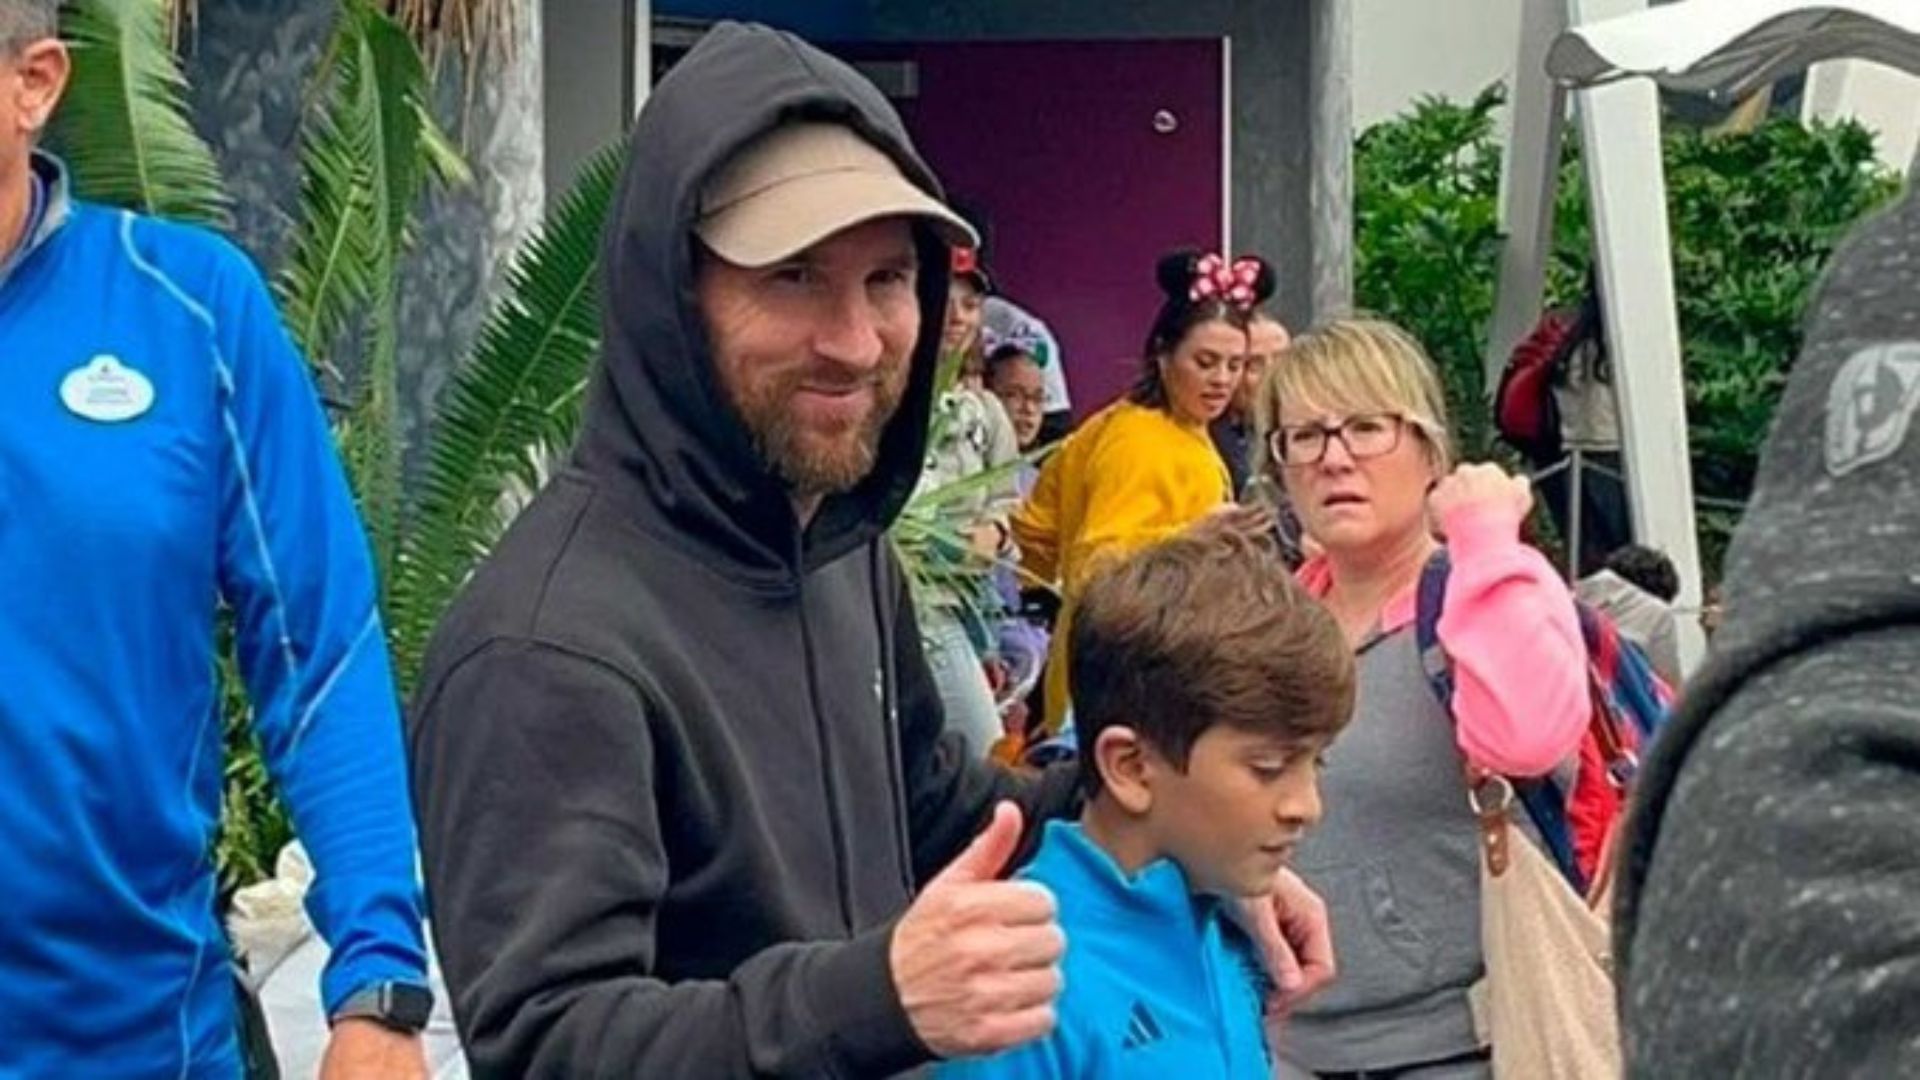 El astro del futbol mundial, Lionel Messi, paseando junto a uno de sus hijos en el parque de Disney World Resort en Orlando, Florida. (Foto Prensa Libre: Captura de pantalla) 